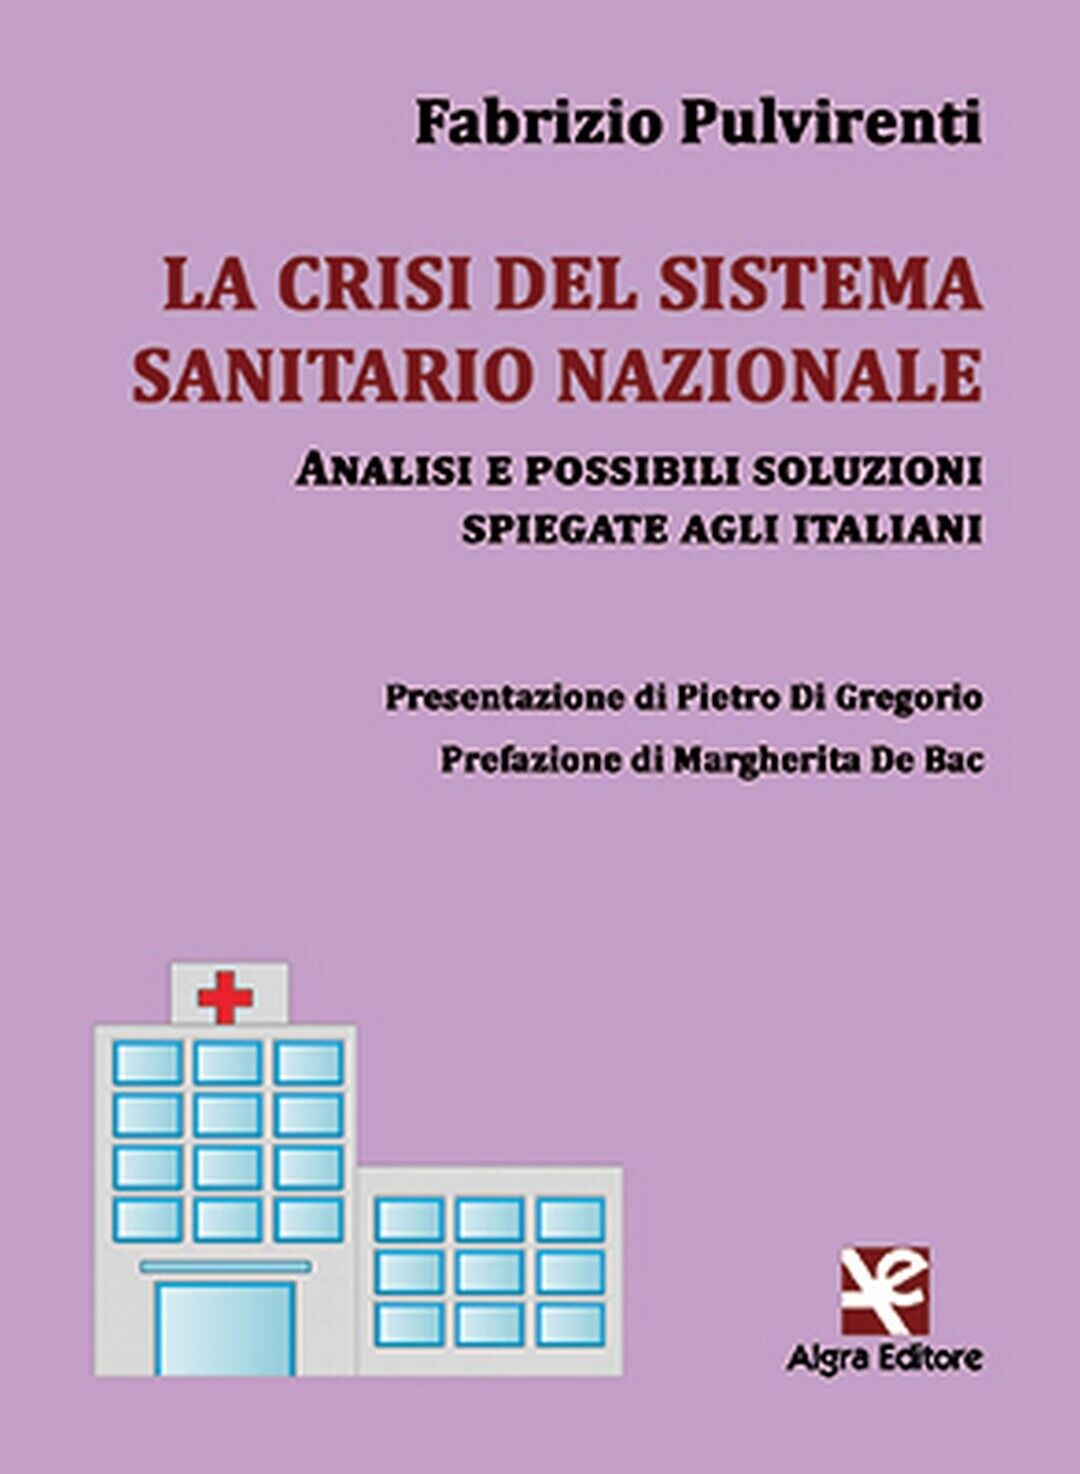 La crisi del sistema sanitario nazionale  di Fabrizio Pulvirenti,  Algra Editore